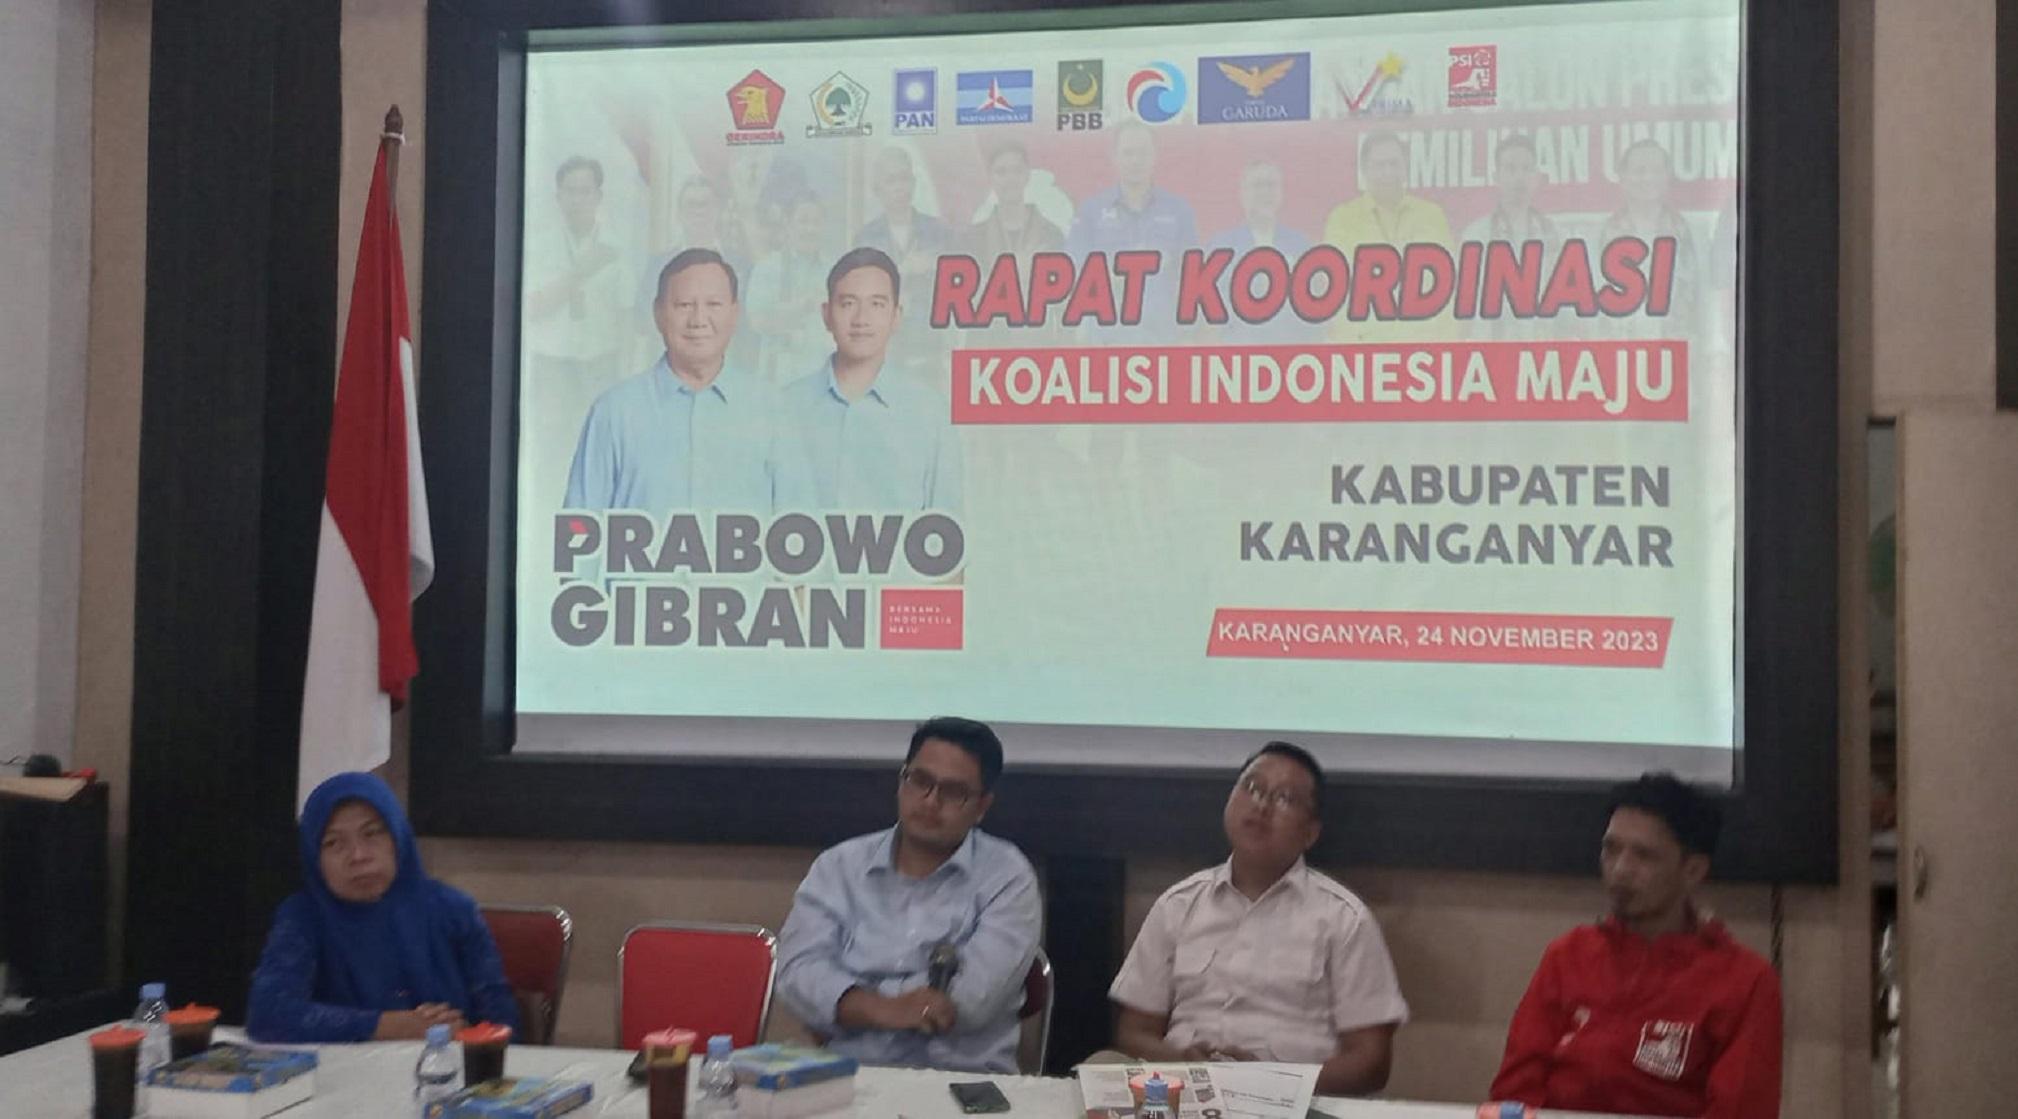 Rapat Koordinasi KIM untuk memenangkan Prabowo - Gibran di Karanganyar